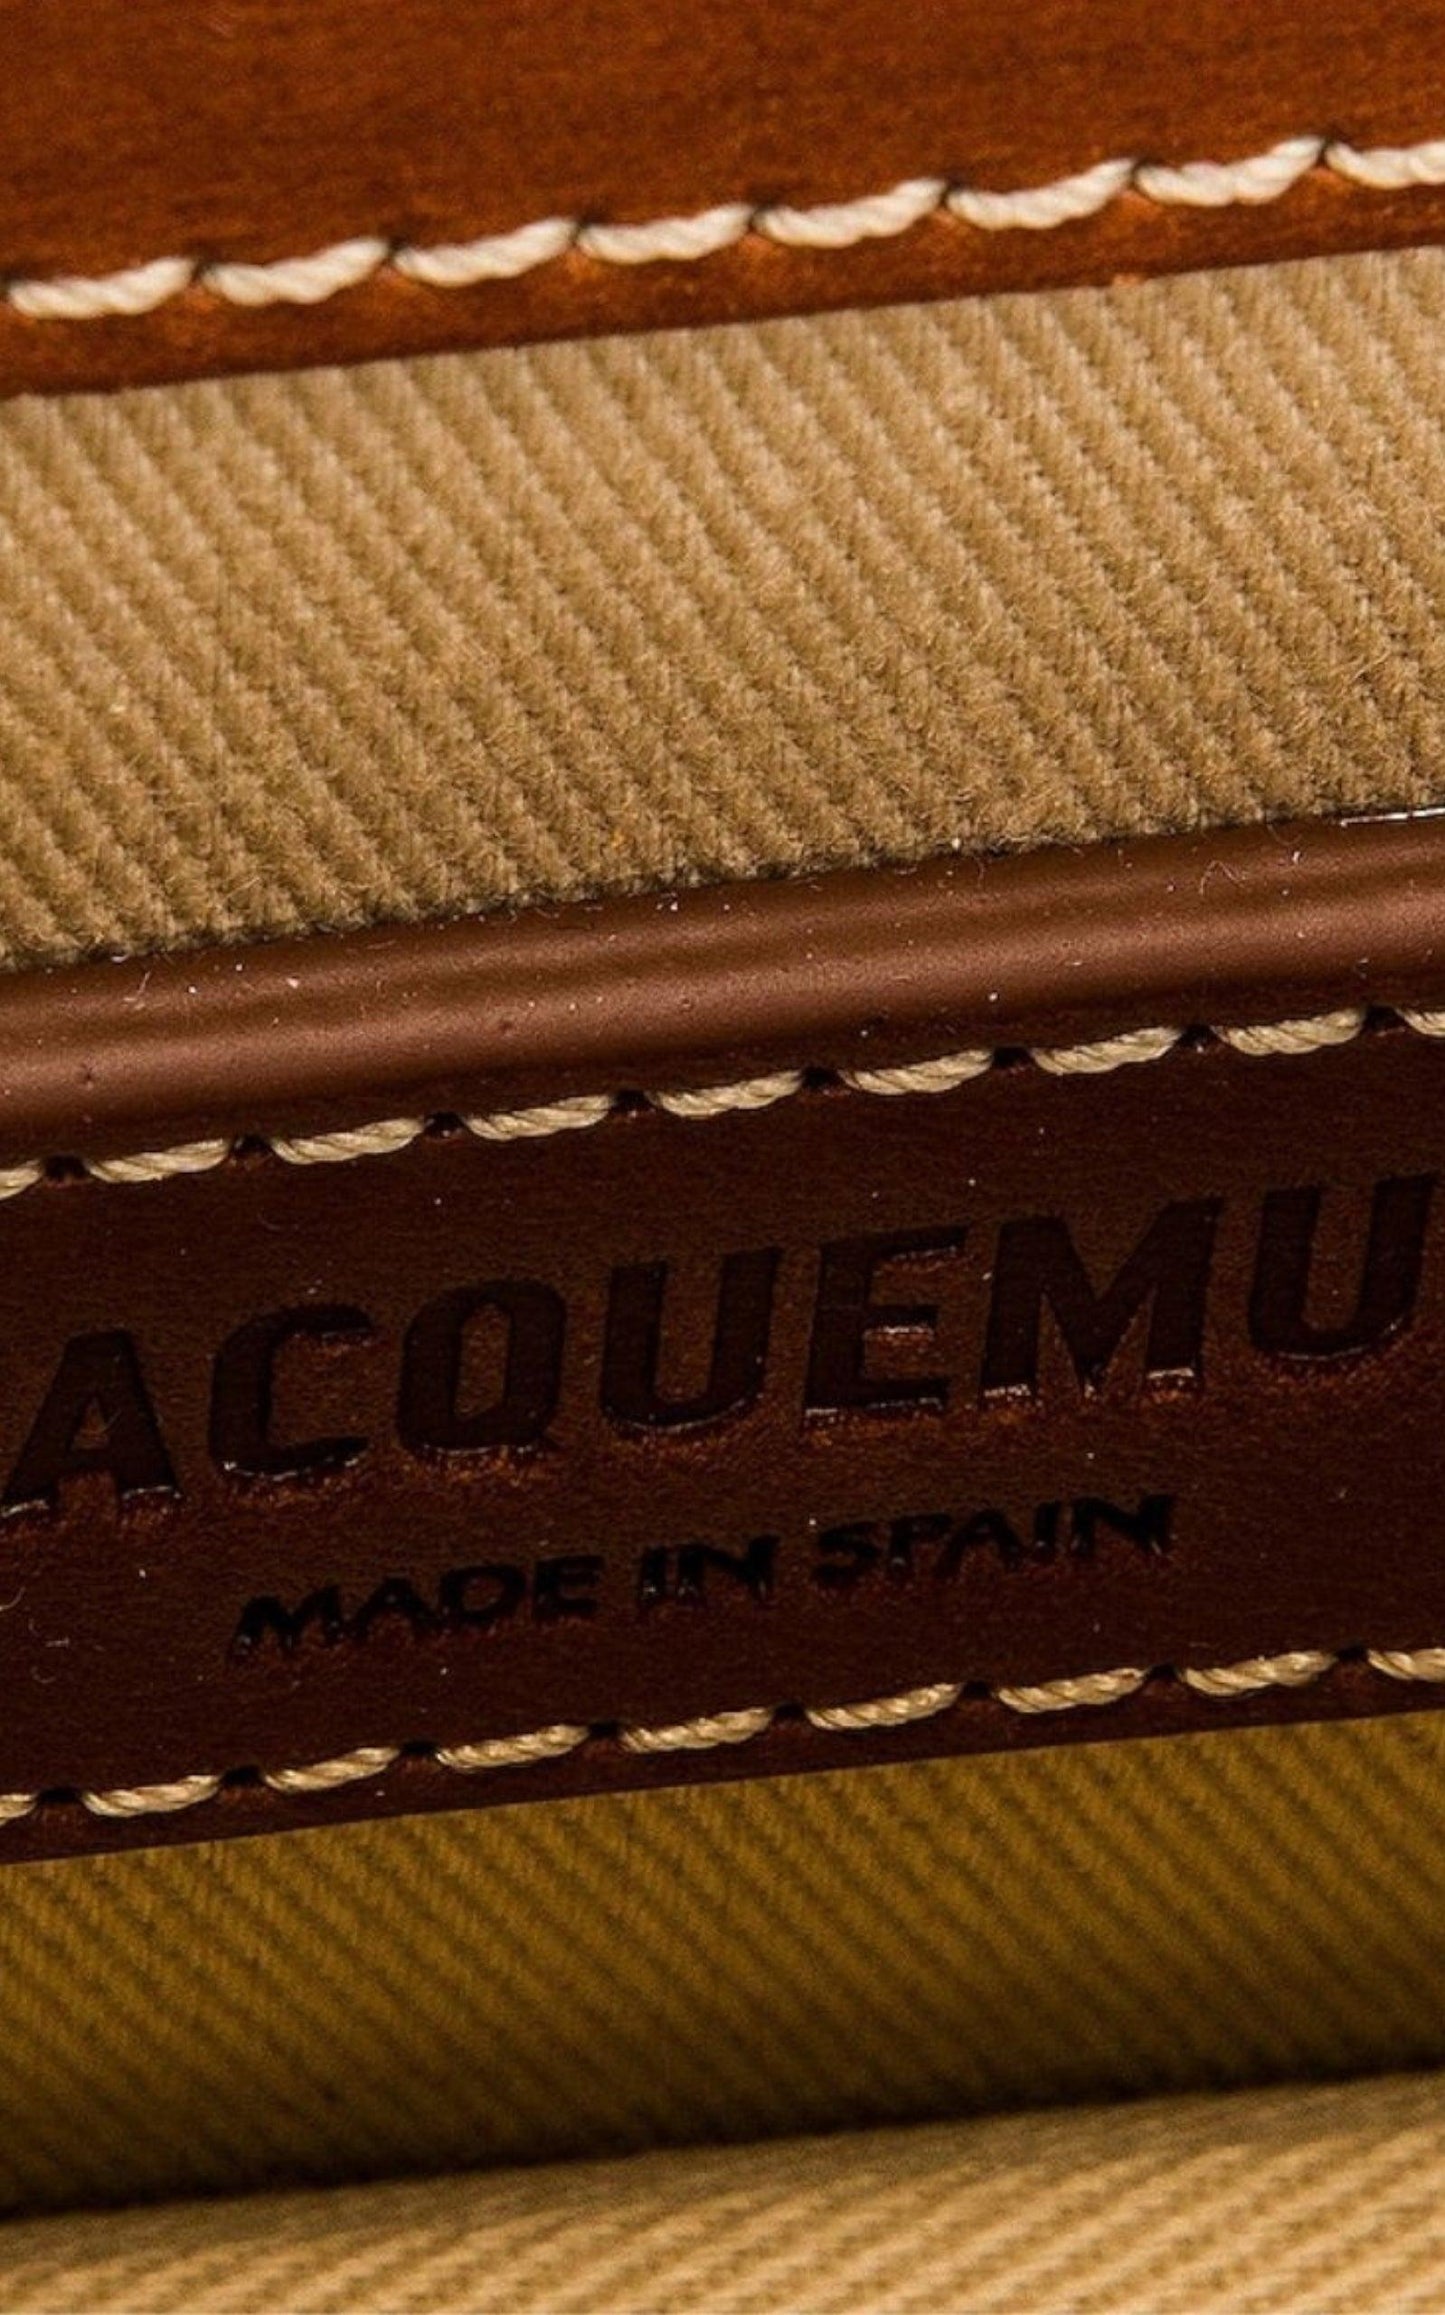  JacquemusMini Chiquito Top Handle Bag - Runway Catalog